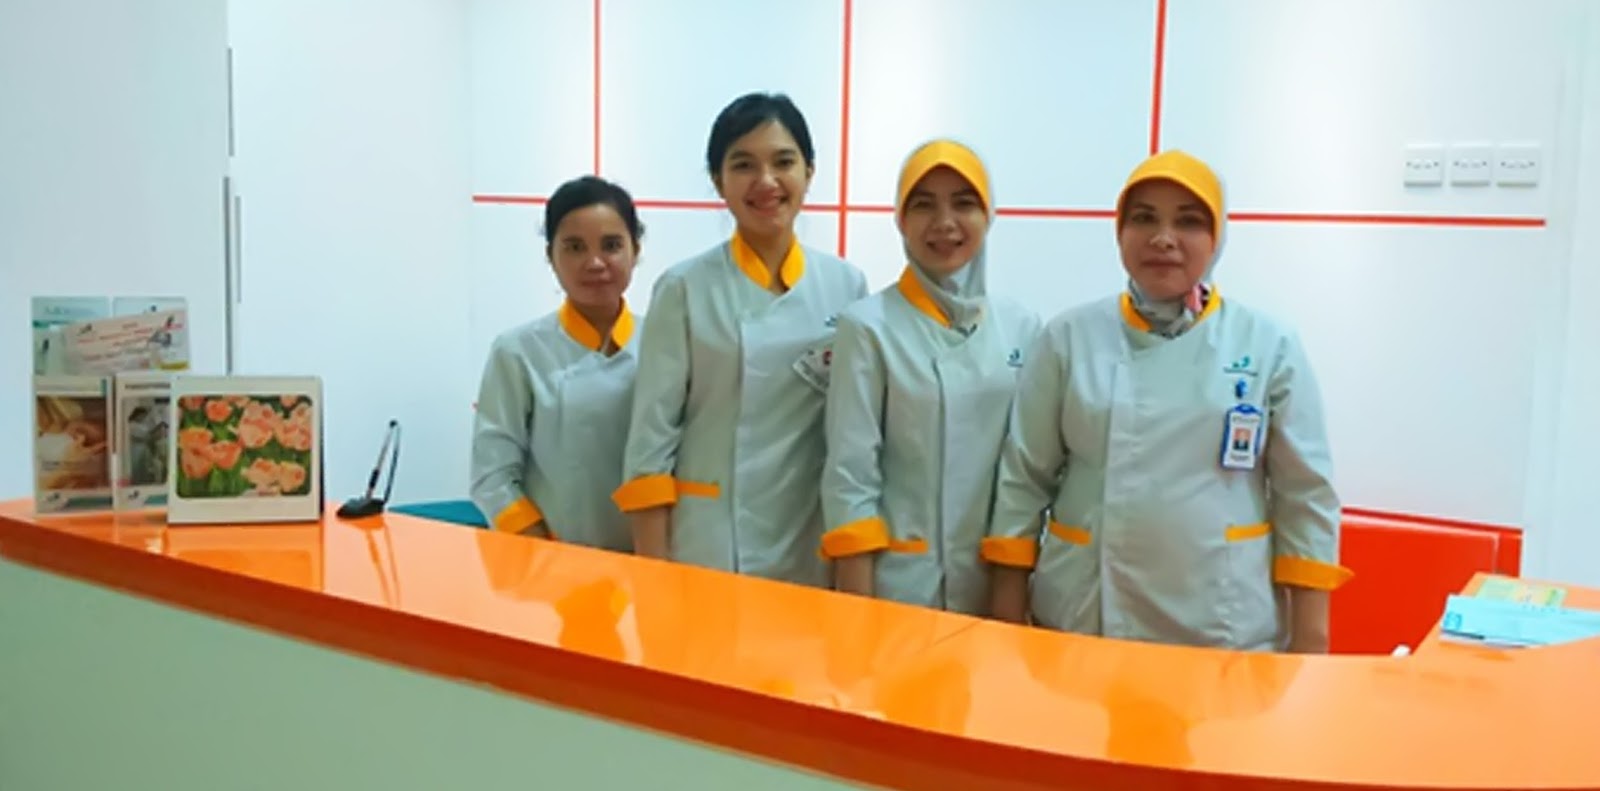 Lowongan Kerja Medis Terbaru di Rumah Sakit Jakarta November 2016